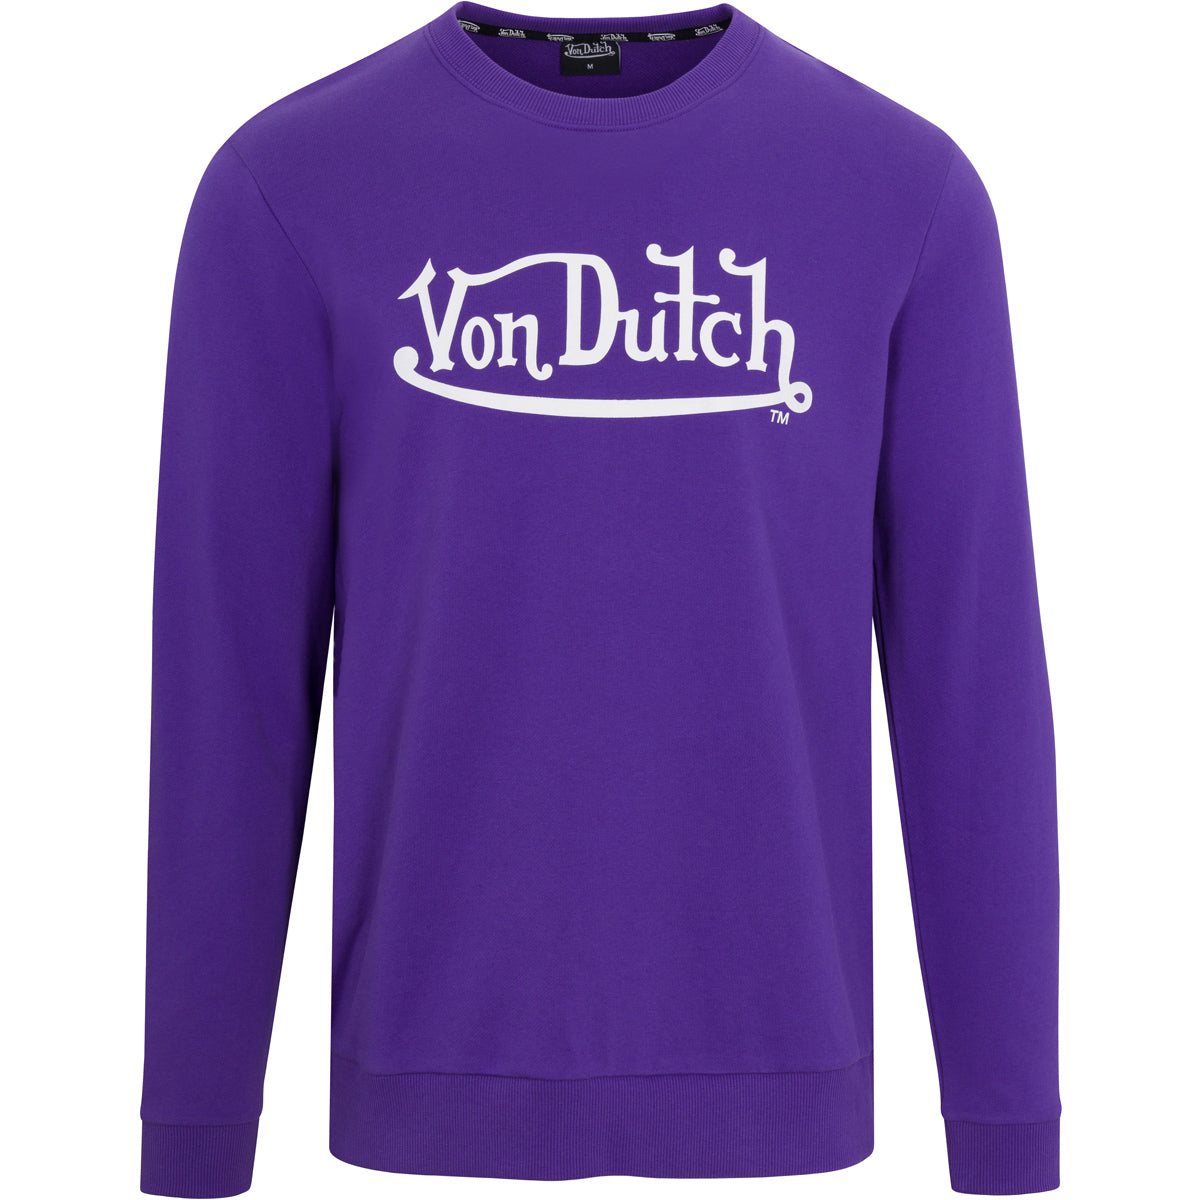 Womens Pink & Black Logo Jogger - Von Dutch